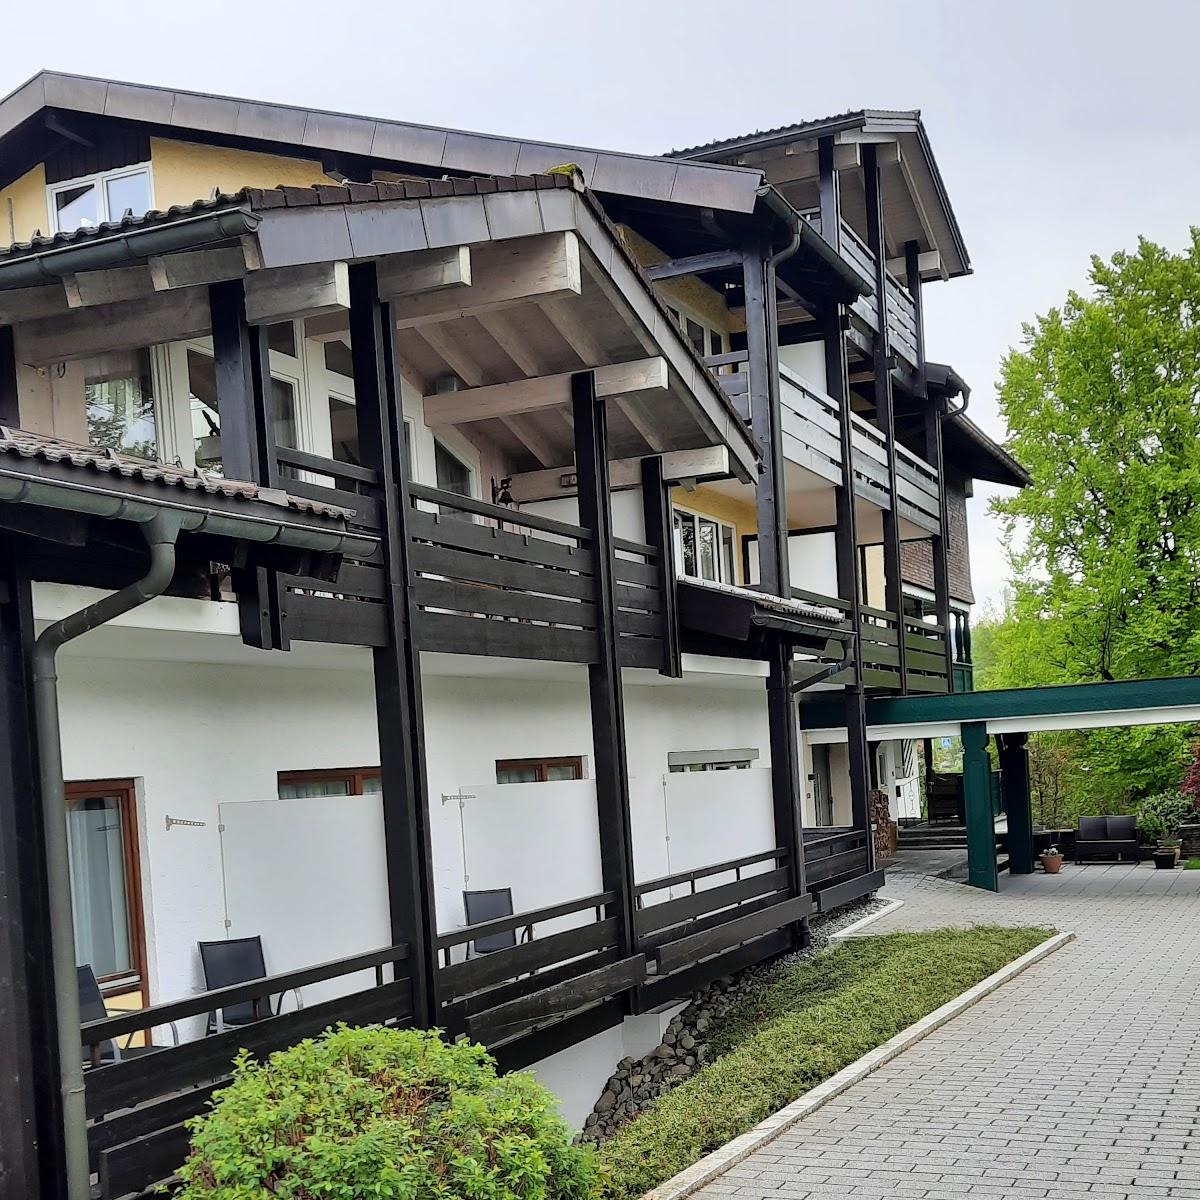 Restaurant "Hotel Bavaria" in Oberstaufen